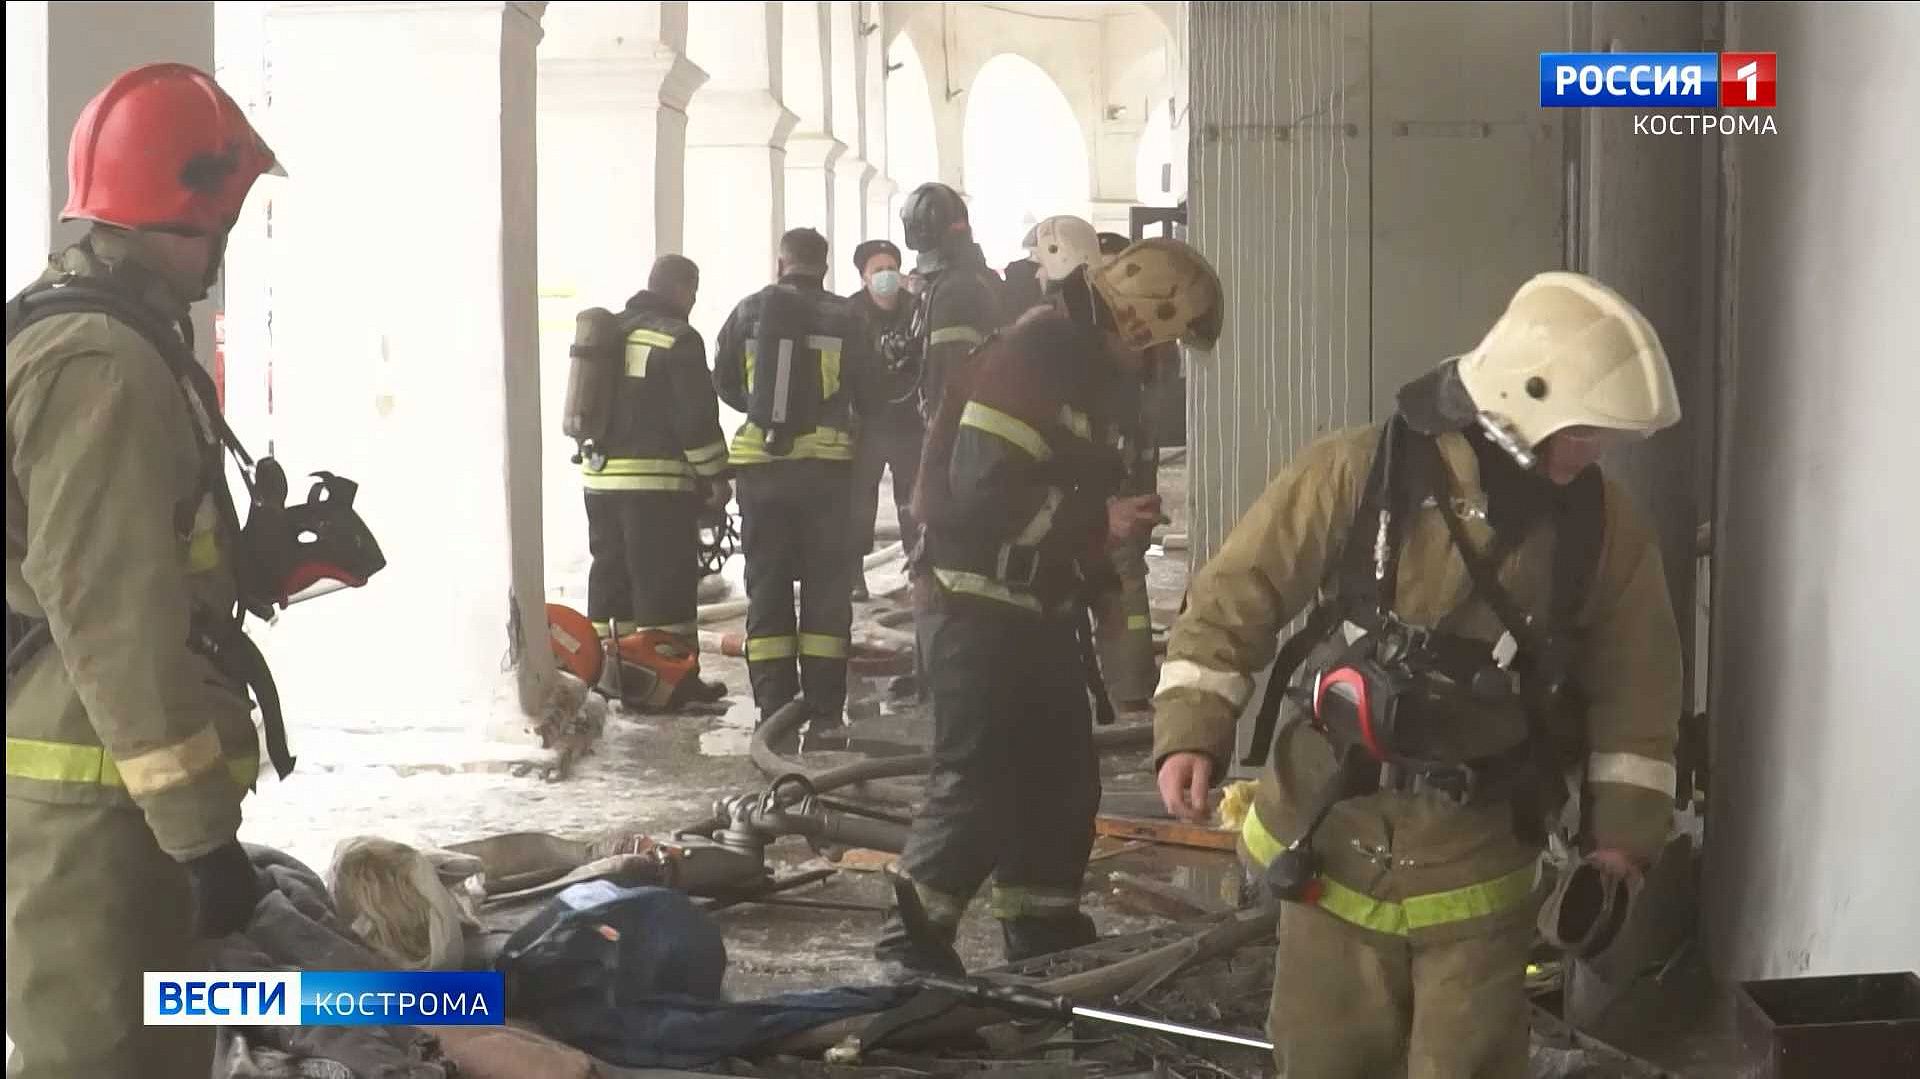 В Костроме оценивают ущерб от пожара в Больших Мучных рядах